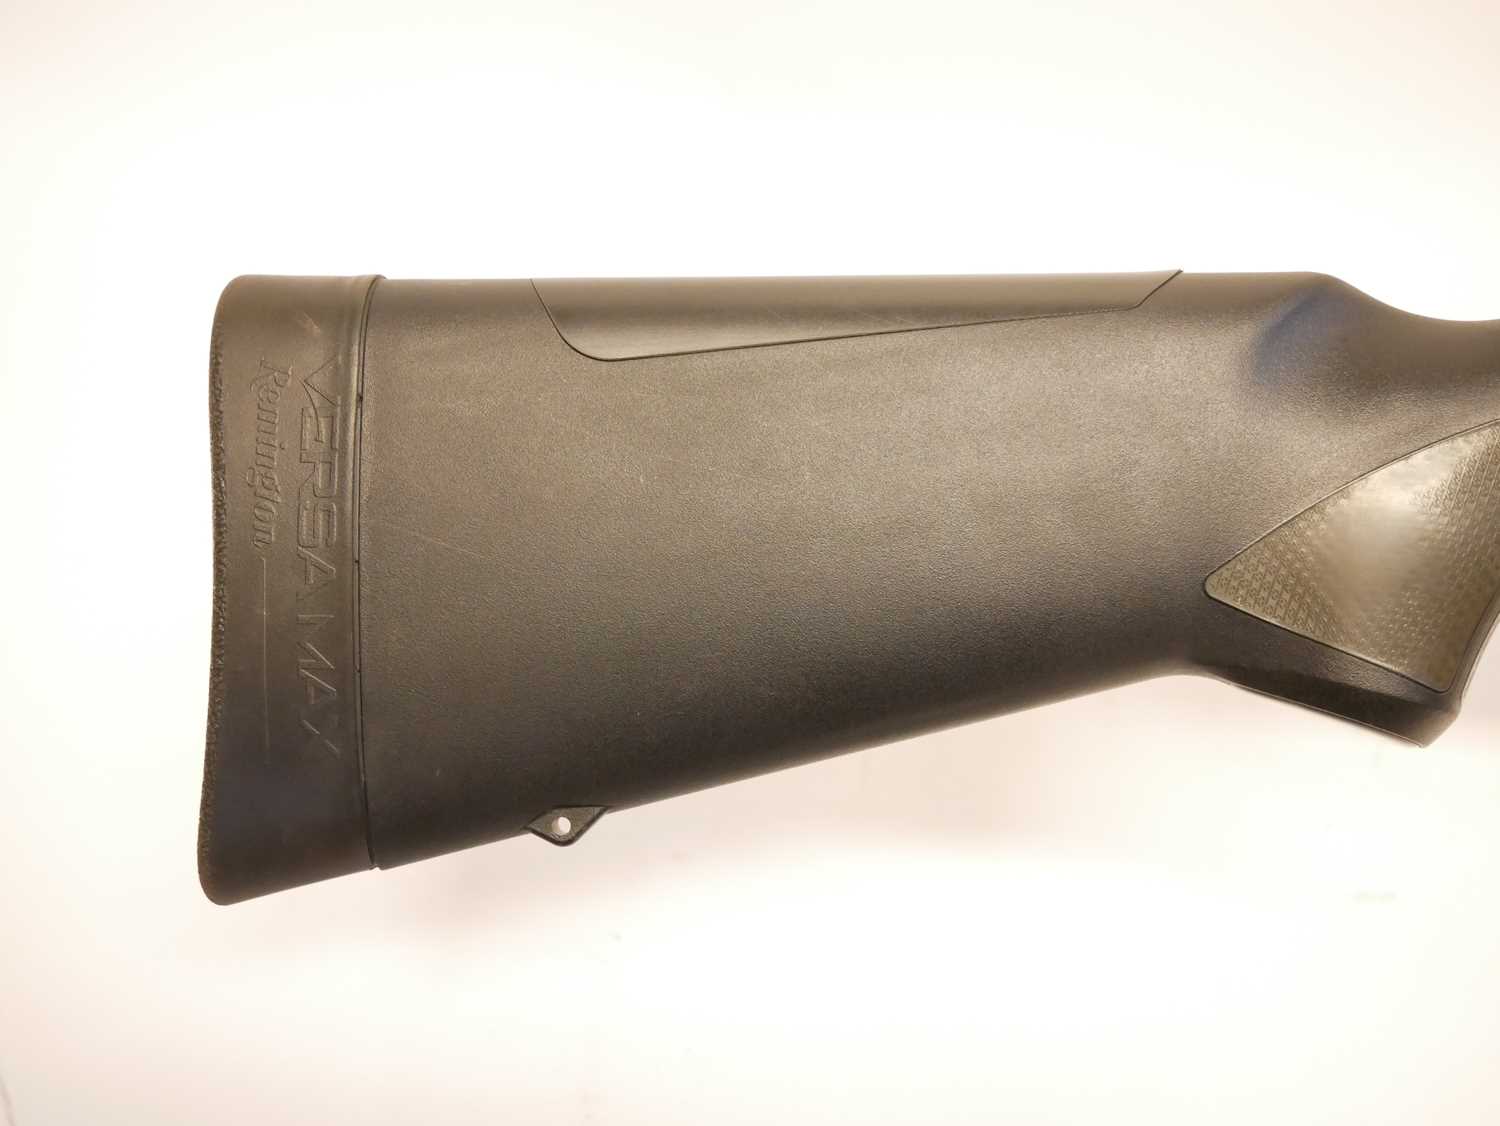 Remington Versa Max 12 bore semi auto shotgun LICENCE REQUIRED - Image 3 of 10